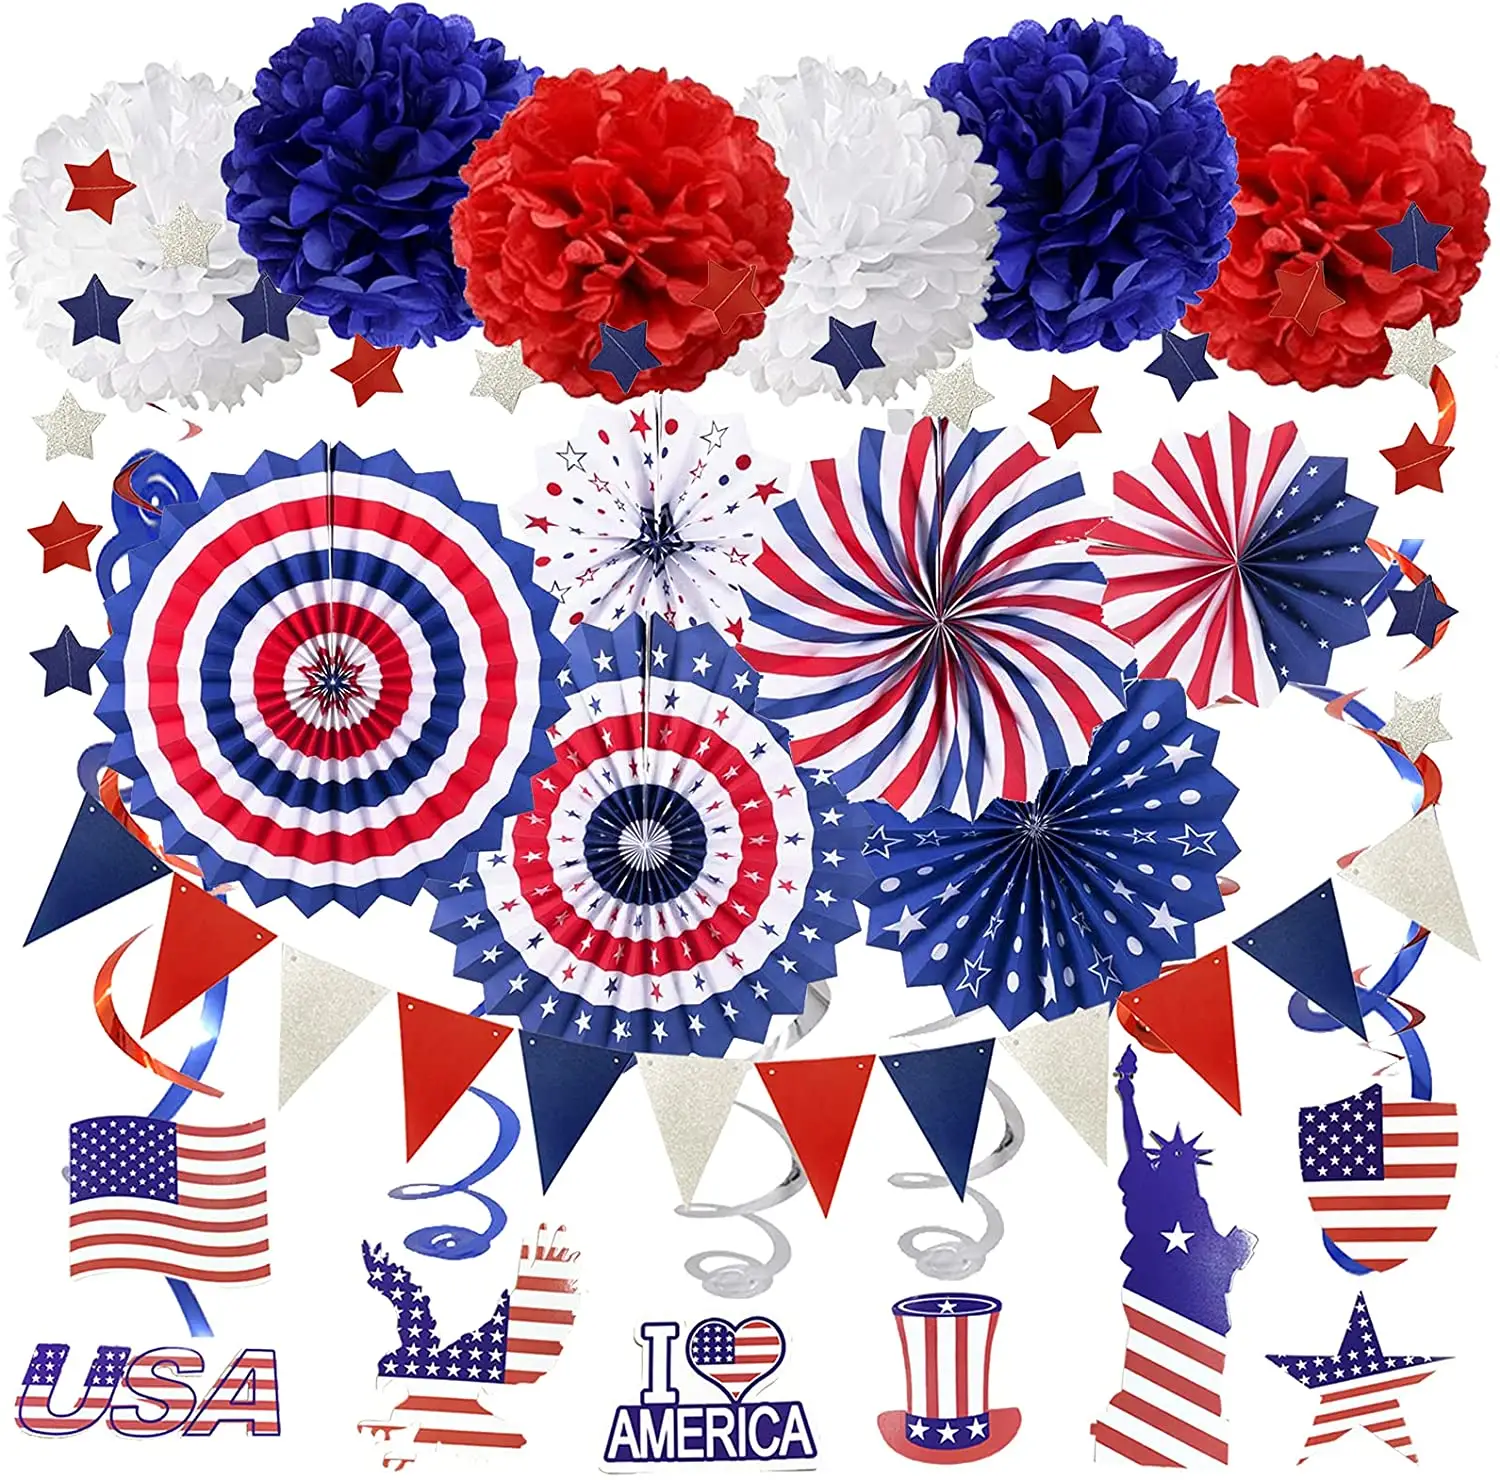 LEMON-suministros de fiesta de Estados Unidos, azul marino y rojo, abanicos de papel, pompones, estrellas, removedores, bandera de Estados Unidos, día de la independencia del Patriotc, 4 de julio